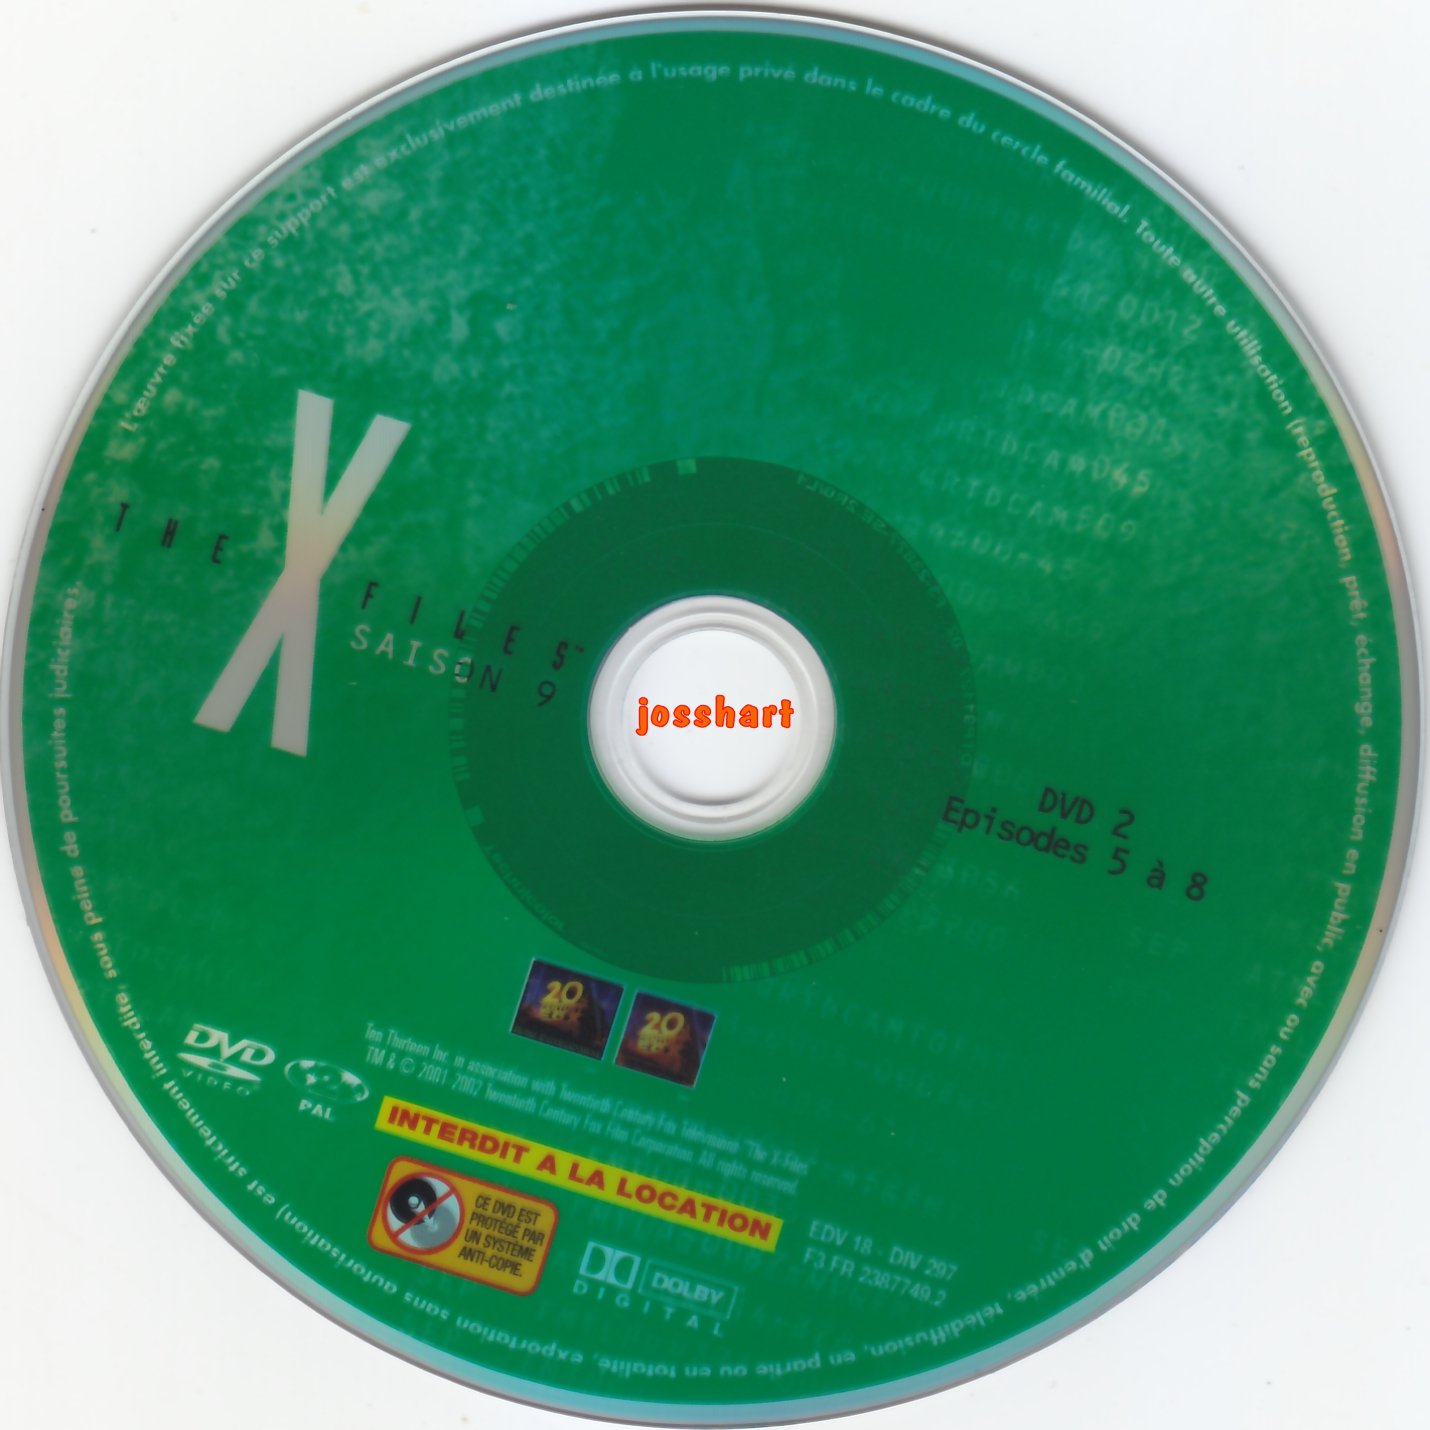 The X Files Saison 9 DVD 2 v2